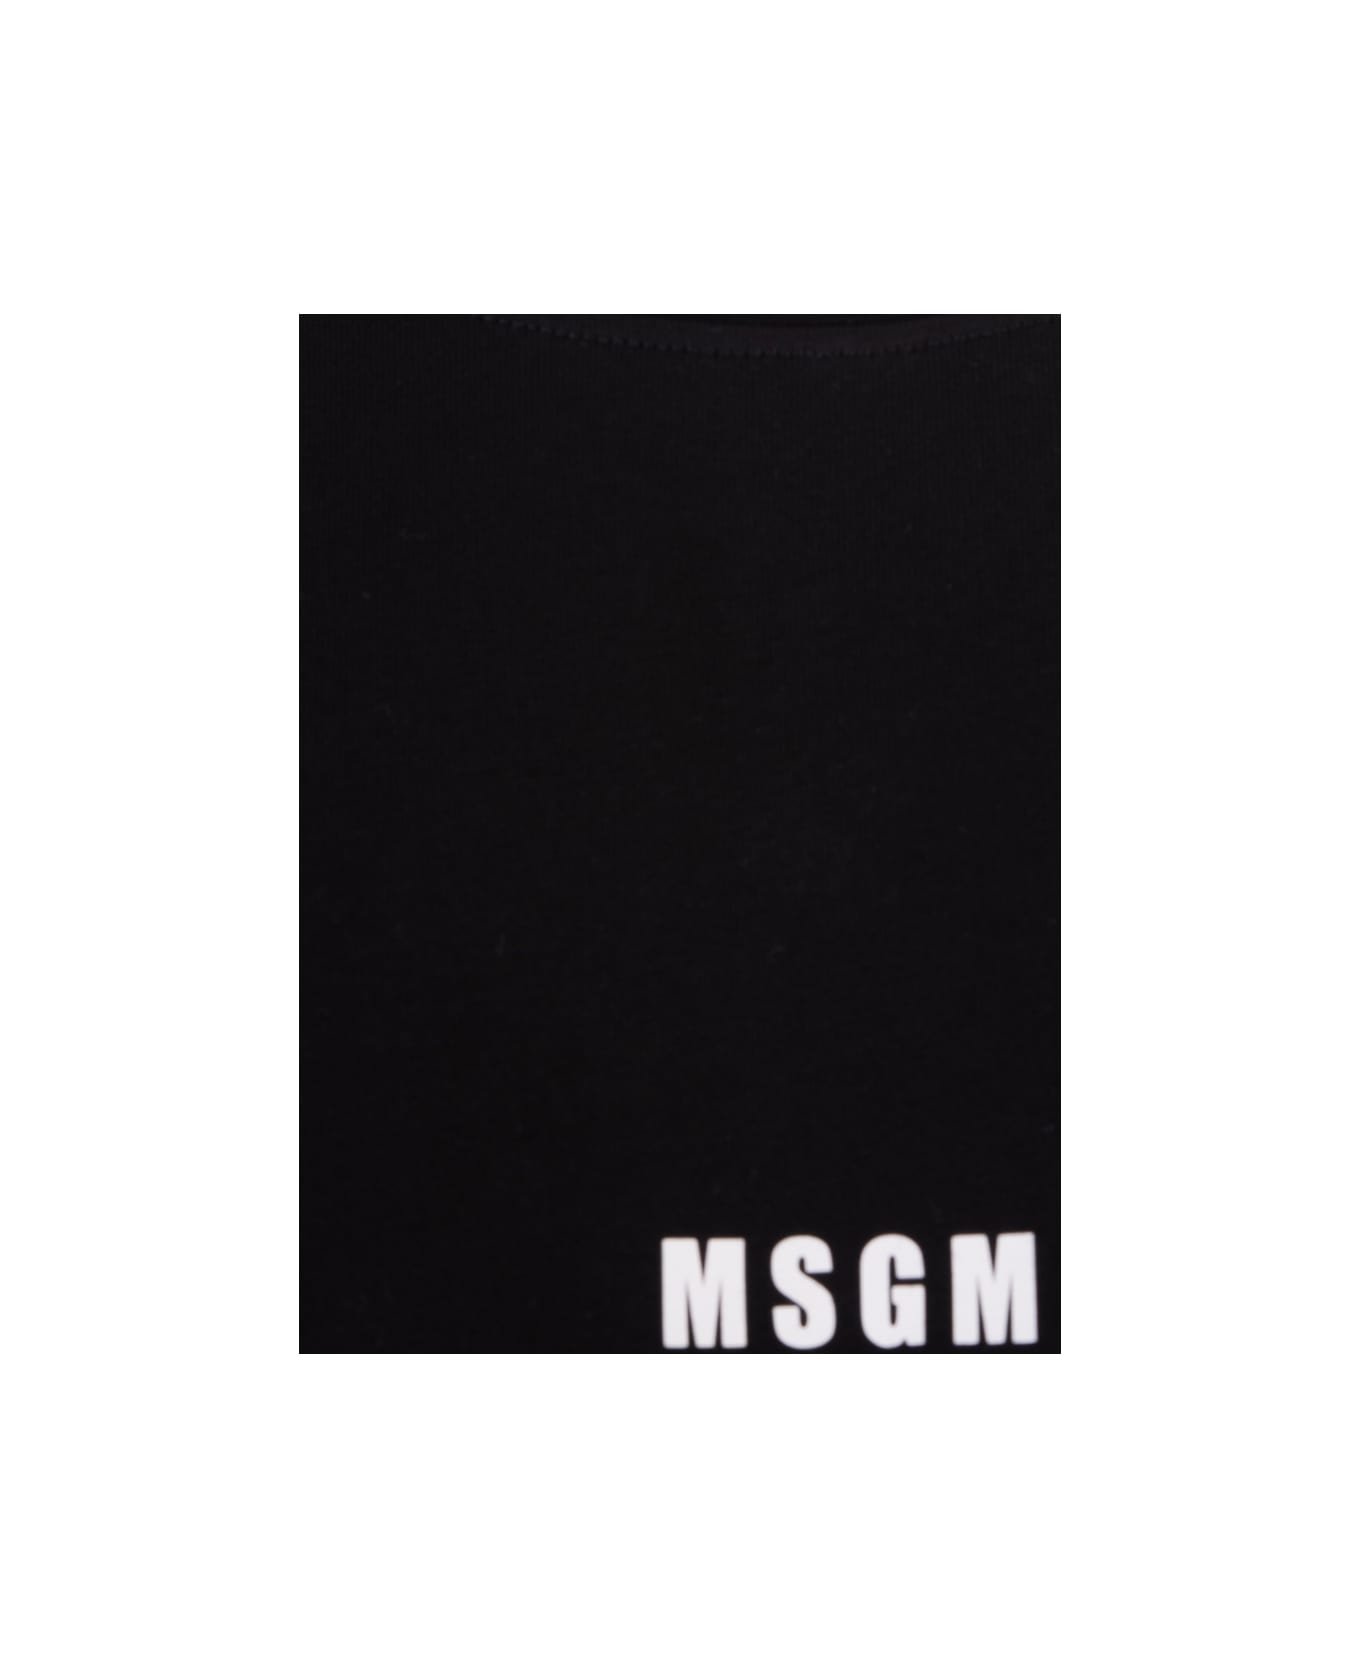 MSGM Black T-shirt With White Micro Logo - Black Tシャツ